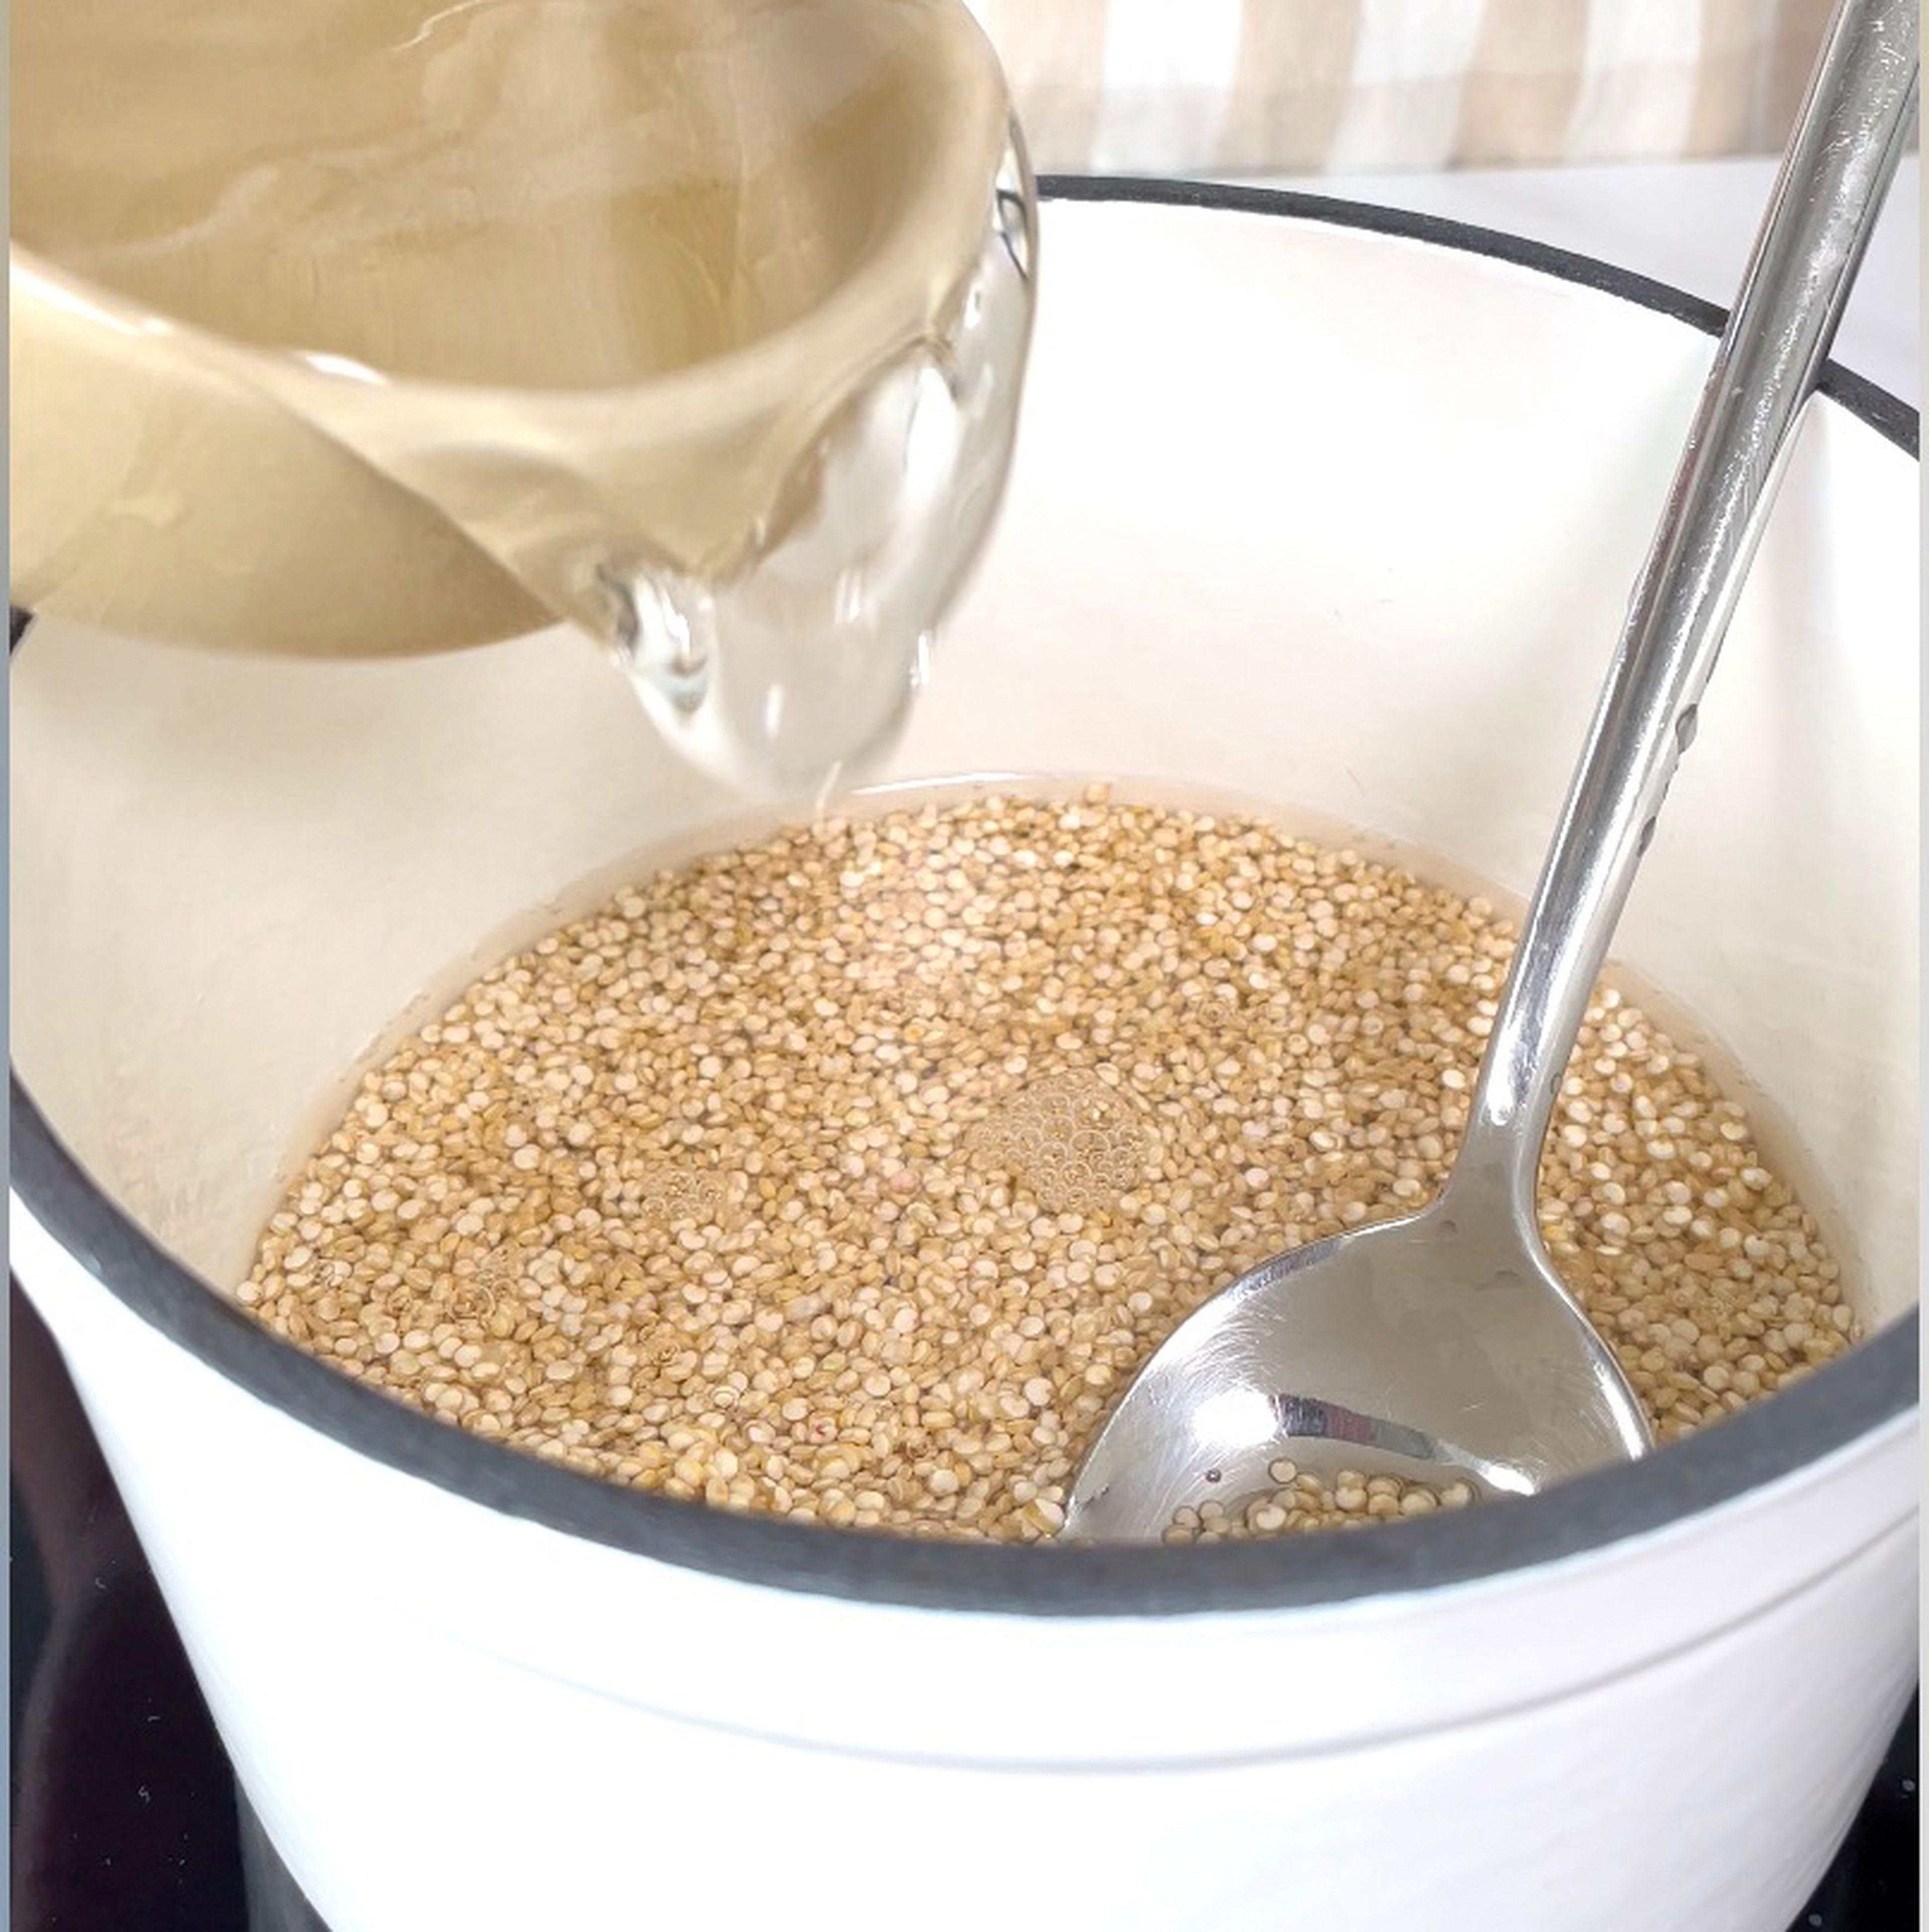 Den Quinoa unter kaltem Wasser in einem Sieb waschen. Dann mit dem Wasser und etwas Salz in einem kleinen Topf zum kochen bringen und bei mittlerer Temperatur für 15 min köcheln lassen.